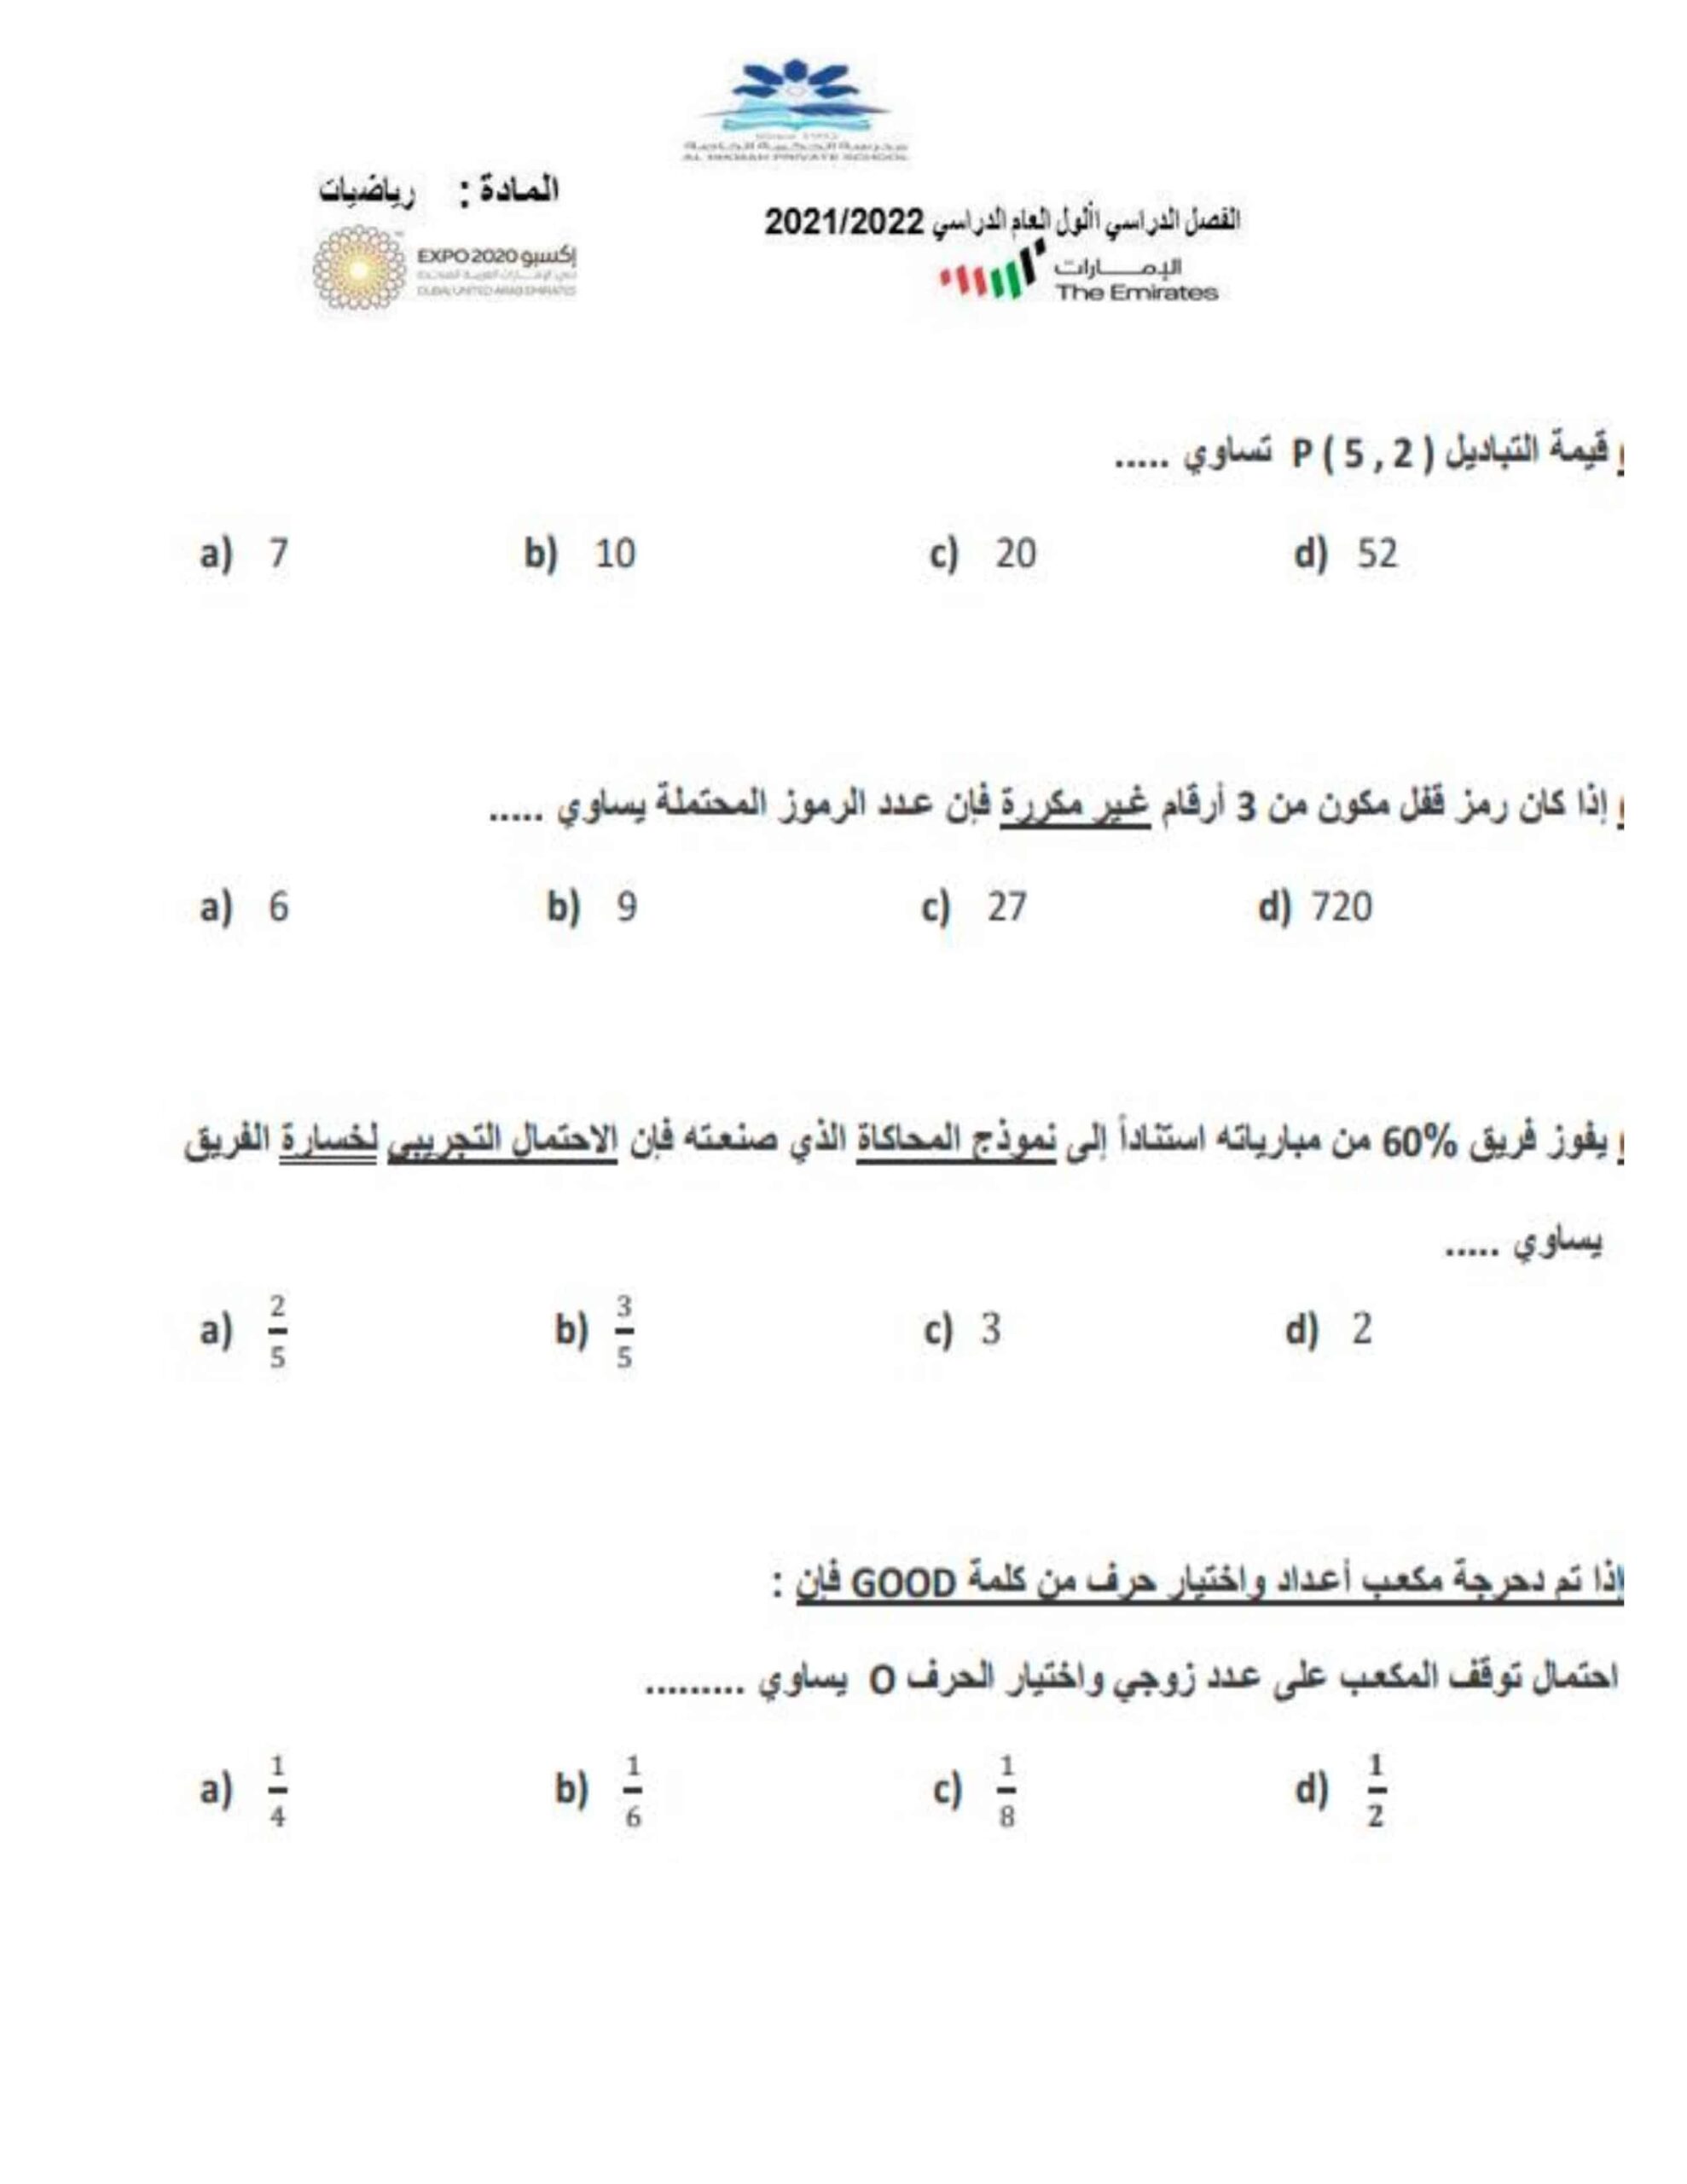 أوراق عمل الوحدة العاشرة الرياضيات المتكاملة الصف السابع 